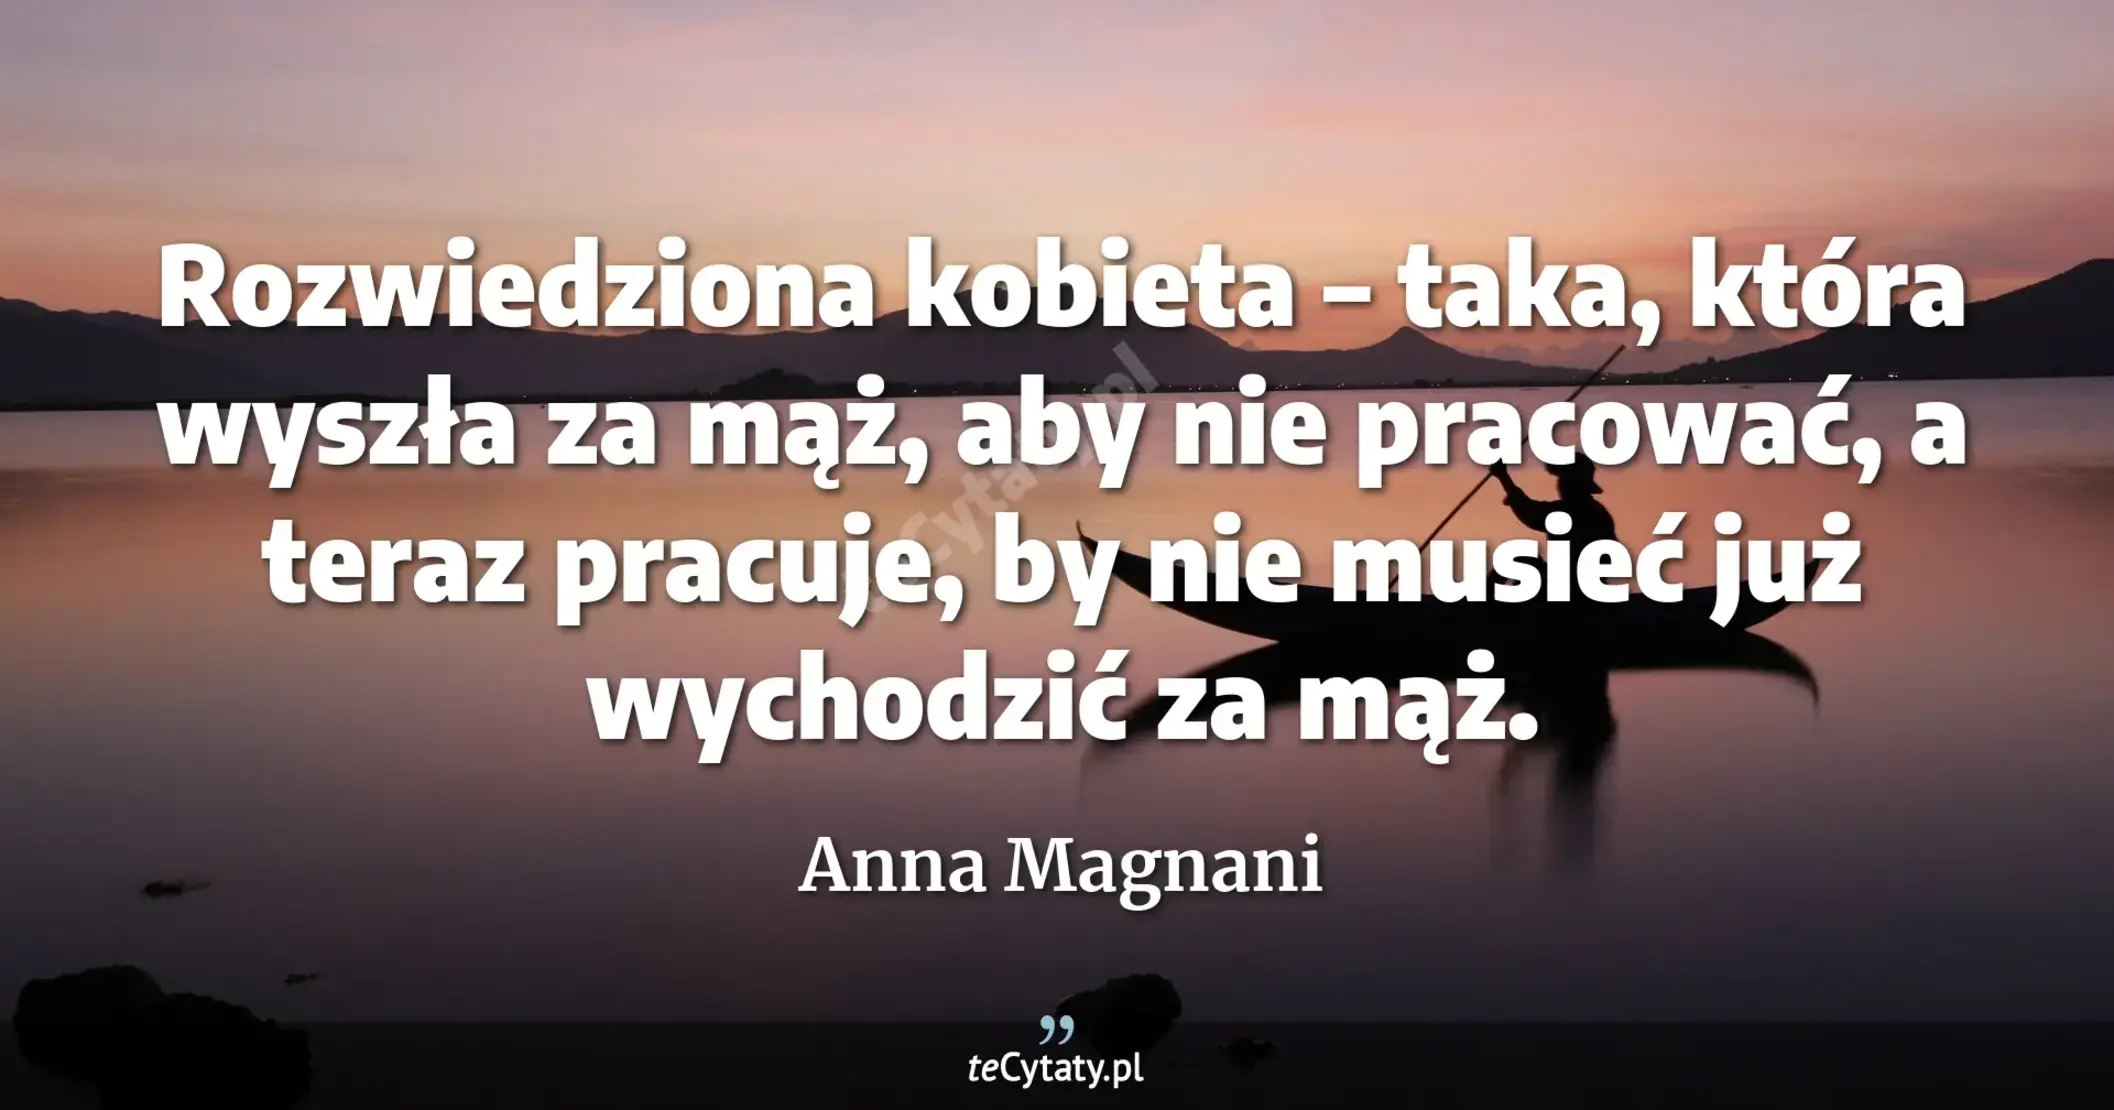 Rozwiedziona kobieta – taka, która wyszła za mąż, aby nie pracować, a teraz pracuje, by nie musieć już wychodzić za mąż. - Anna Magnani